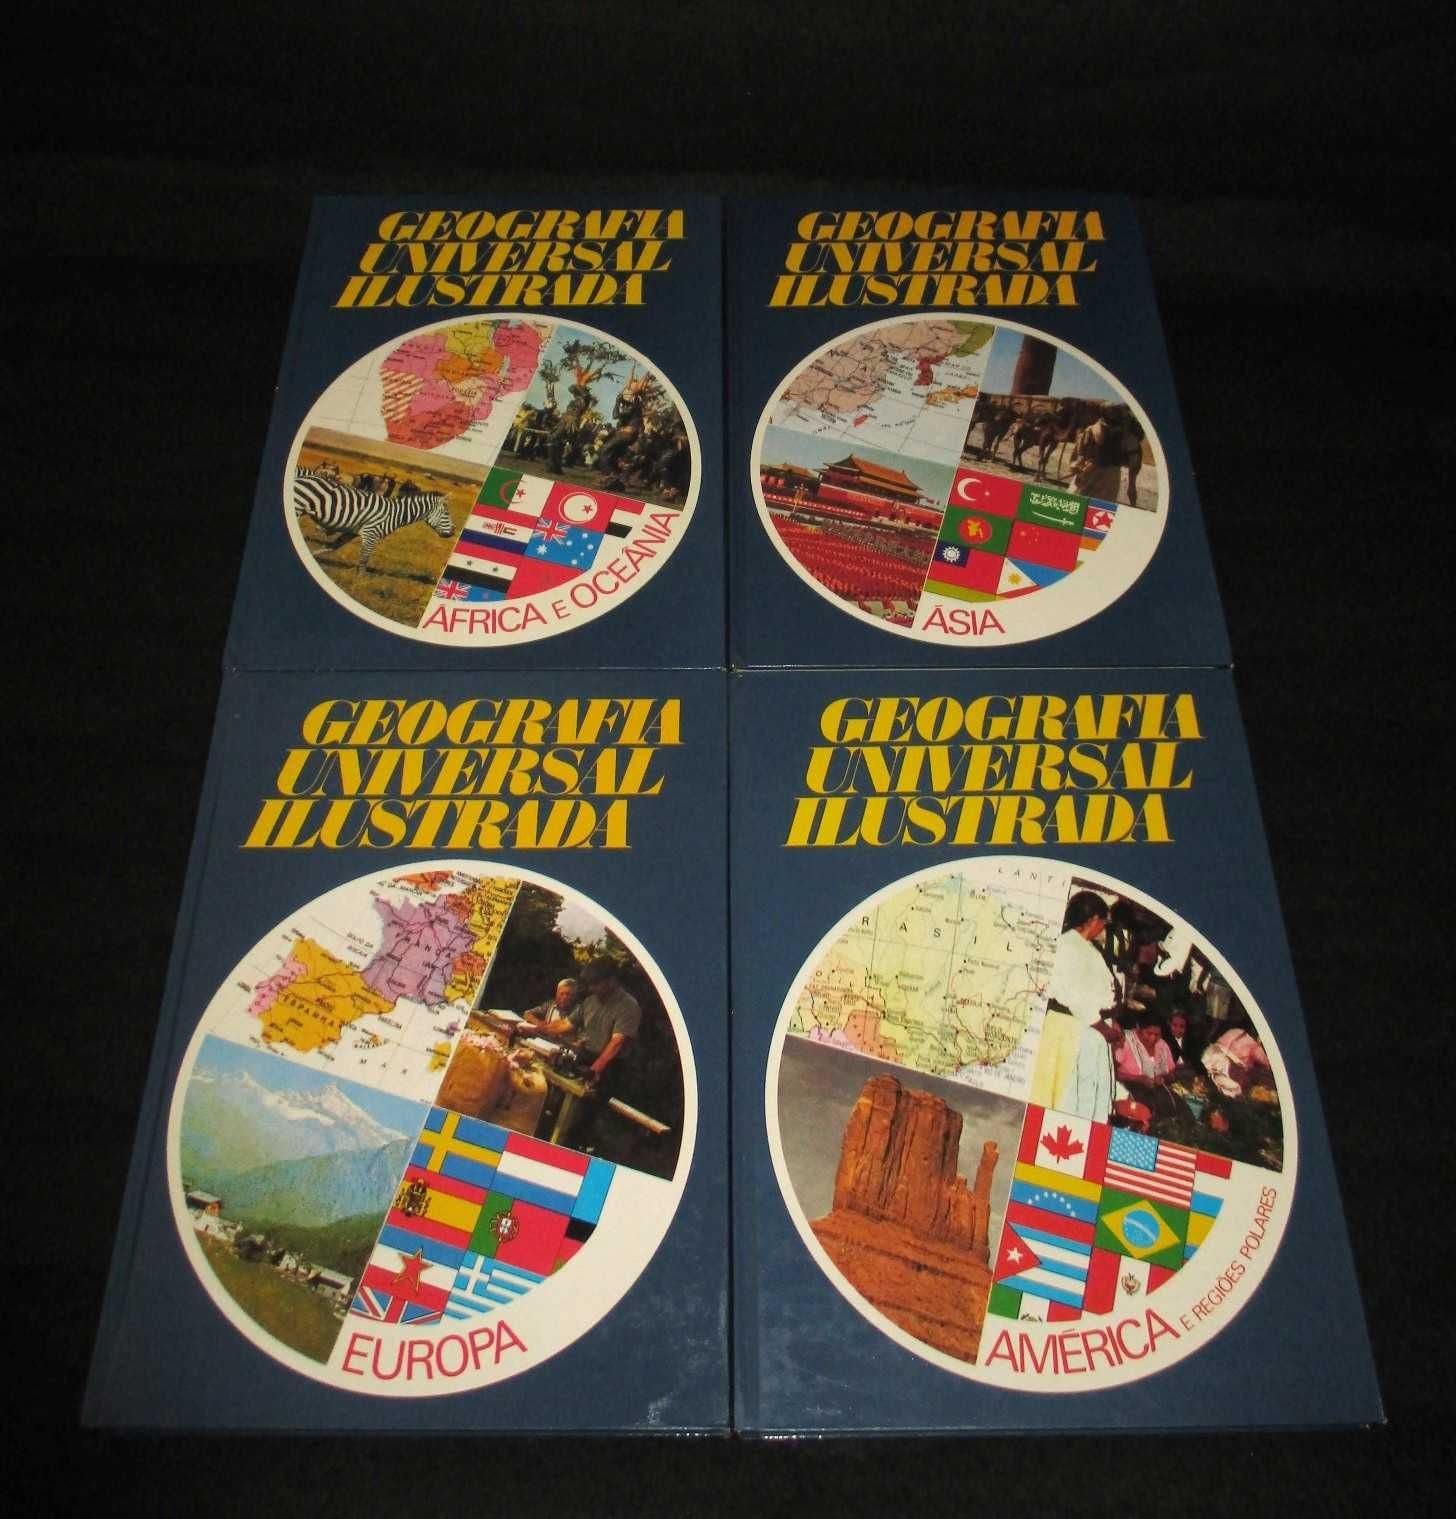 Livro​s Colecção Geografia Universal Ilustrada 4 Volumes